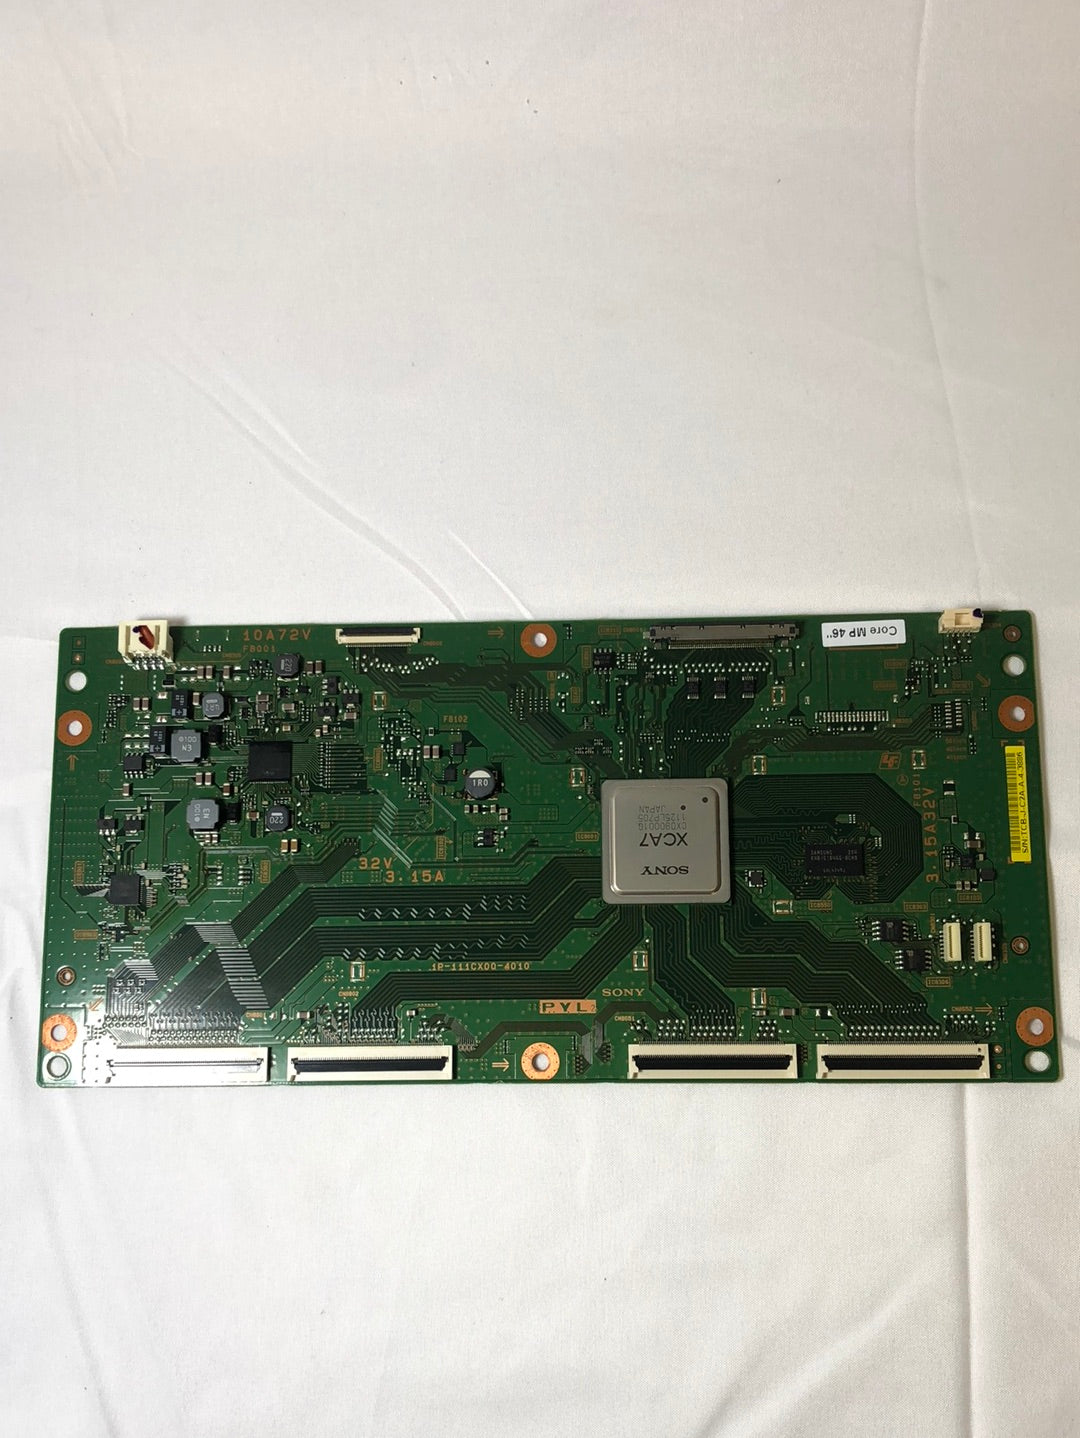 Sony 1P-111CX00-4010 PYL2 T-con Board for KDL-46HX850